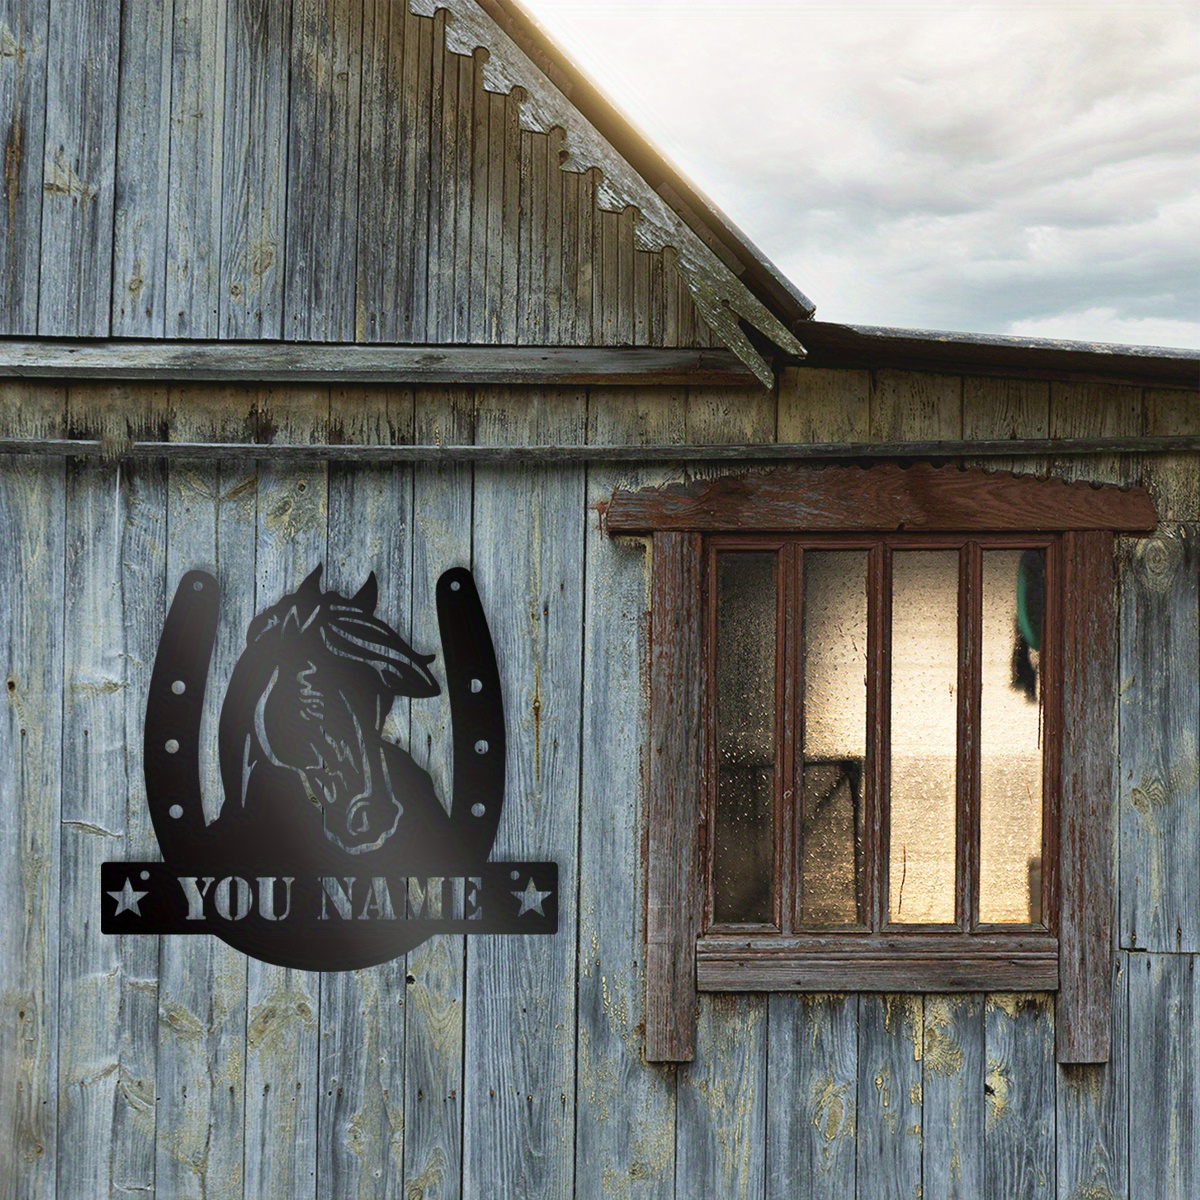 1 قطعة، لافتة مخصصة من المعدن لإسطبل الخيول، ديكور جداري للفروسية، شعار حدوة الحصان مع اسم المزرعة، لوحة عنوان الحصان، ديكور فني للإسطبلات والحظائر